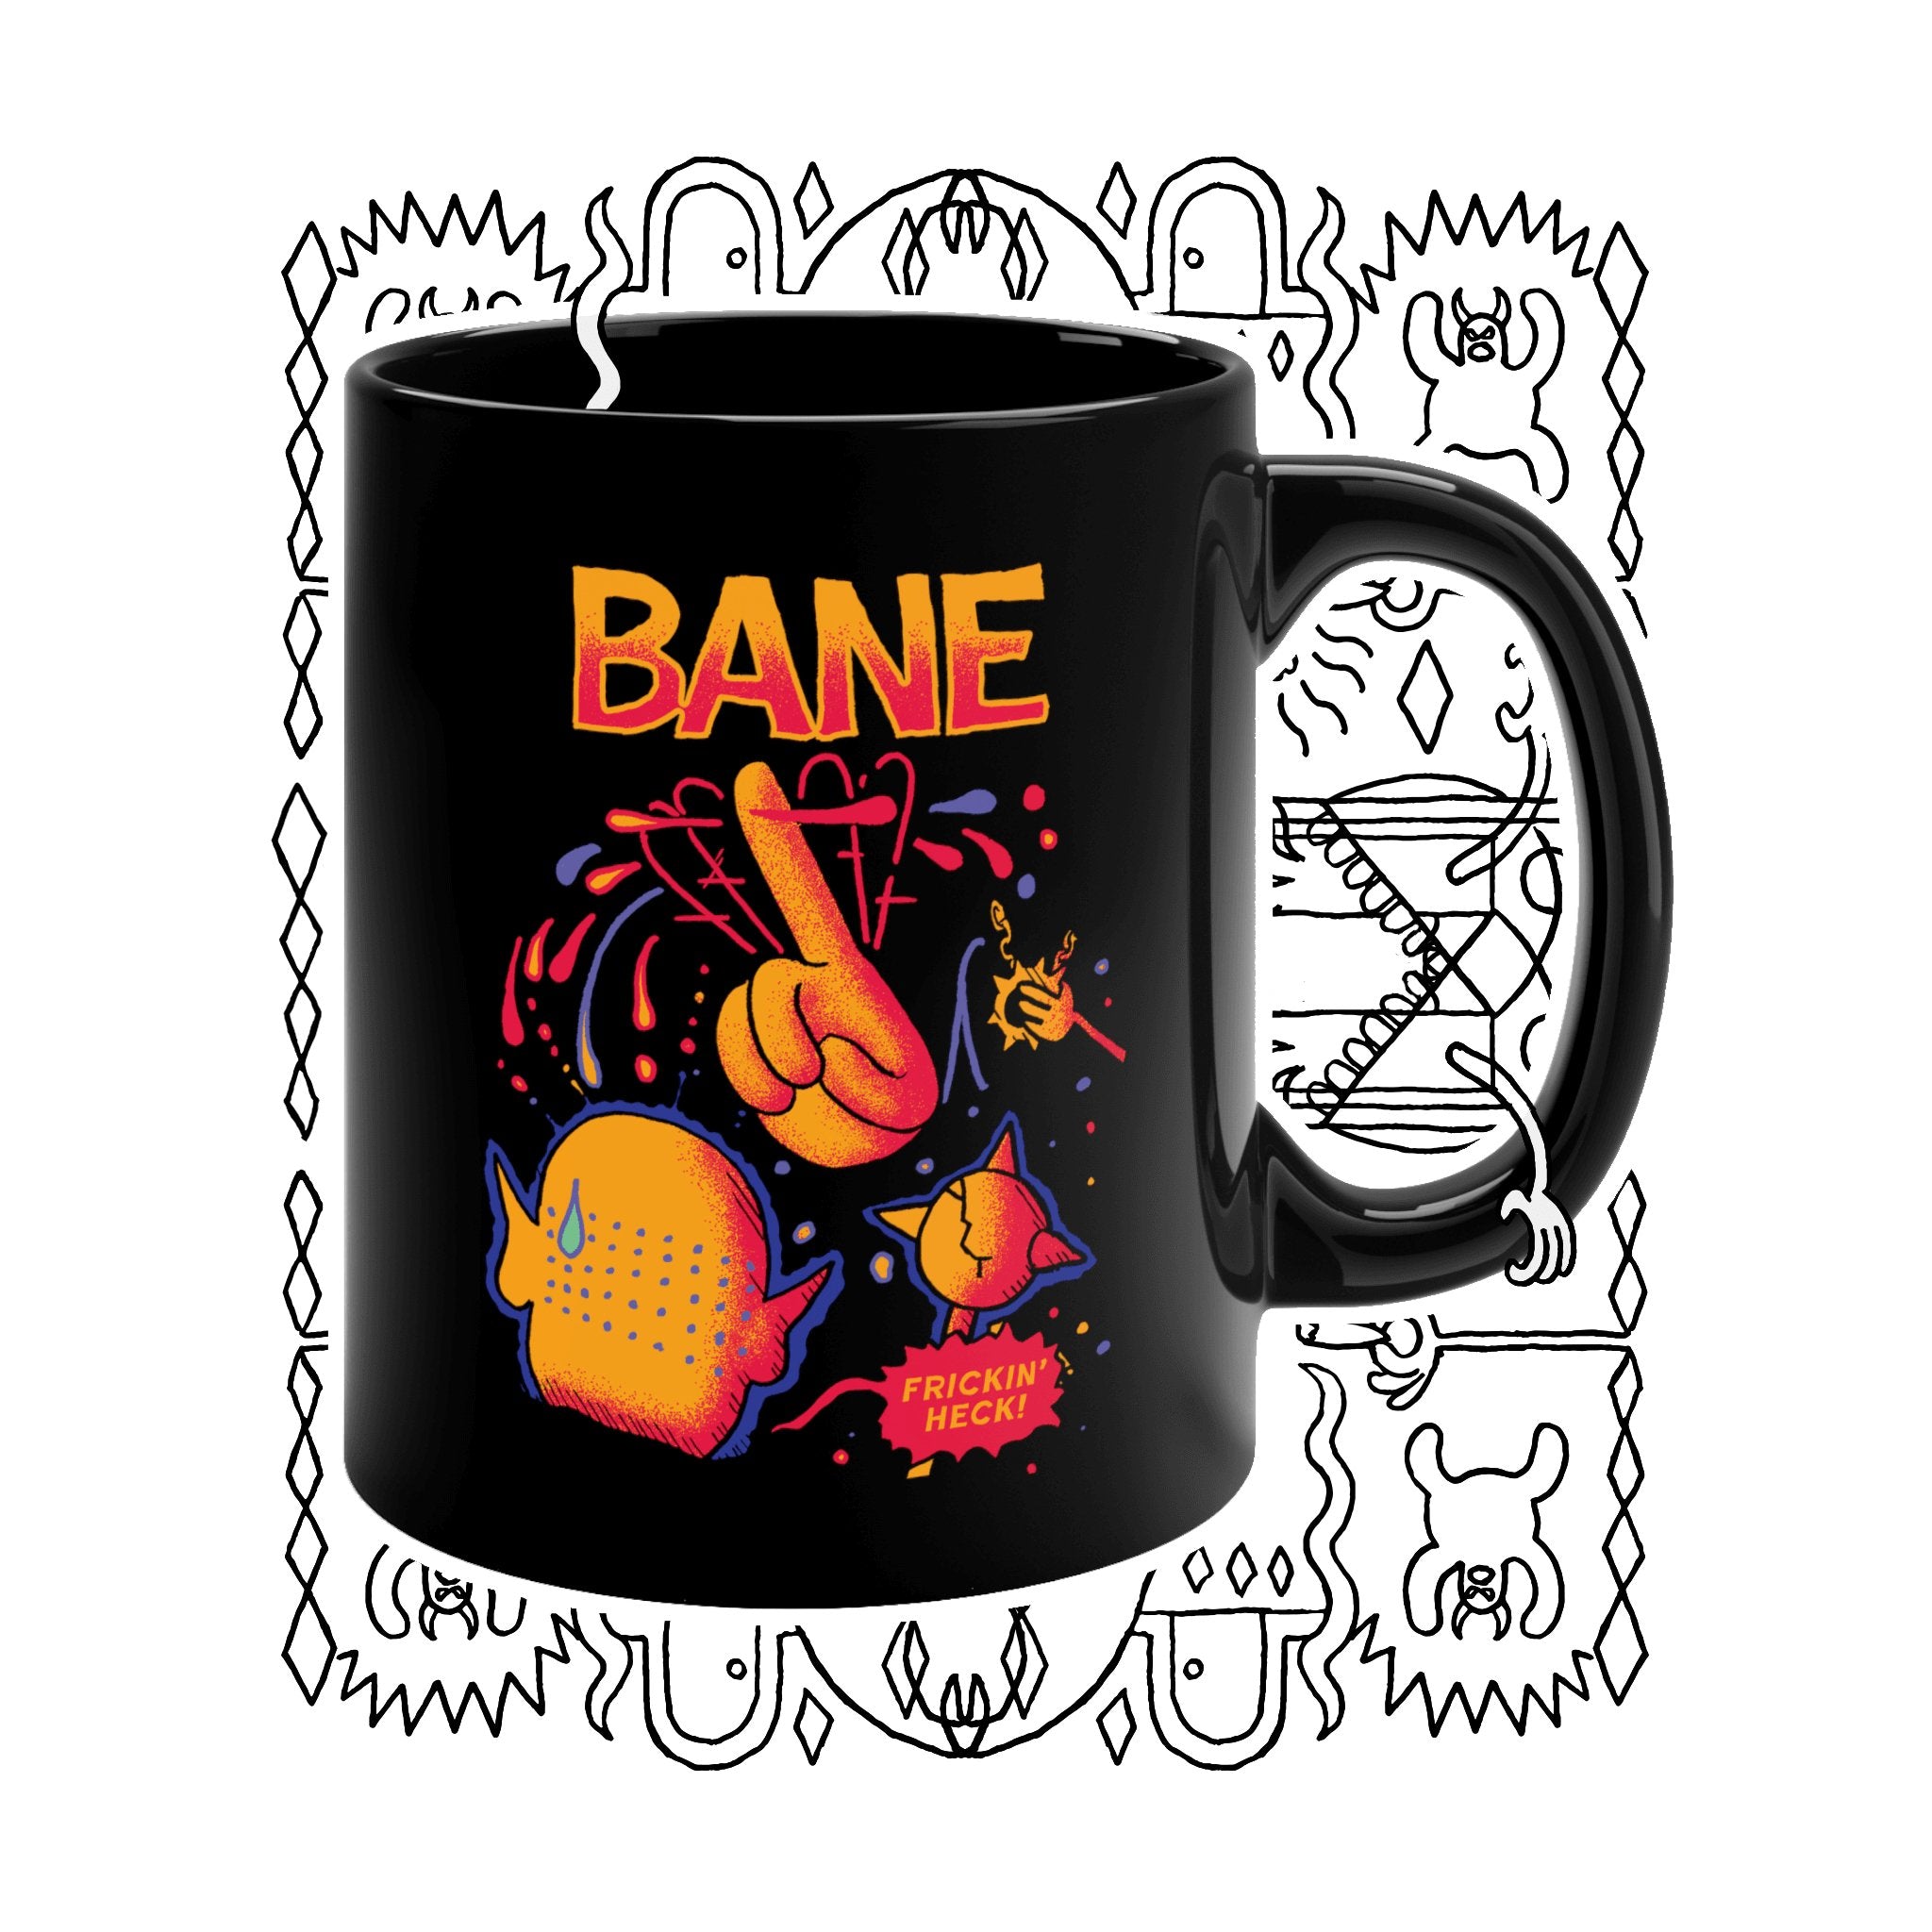 Bane | Black Mug 11oz - Mug - Ace of Gnomes - 21980099229072748756